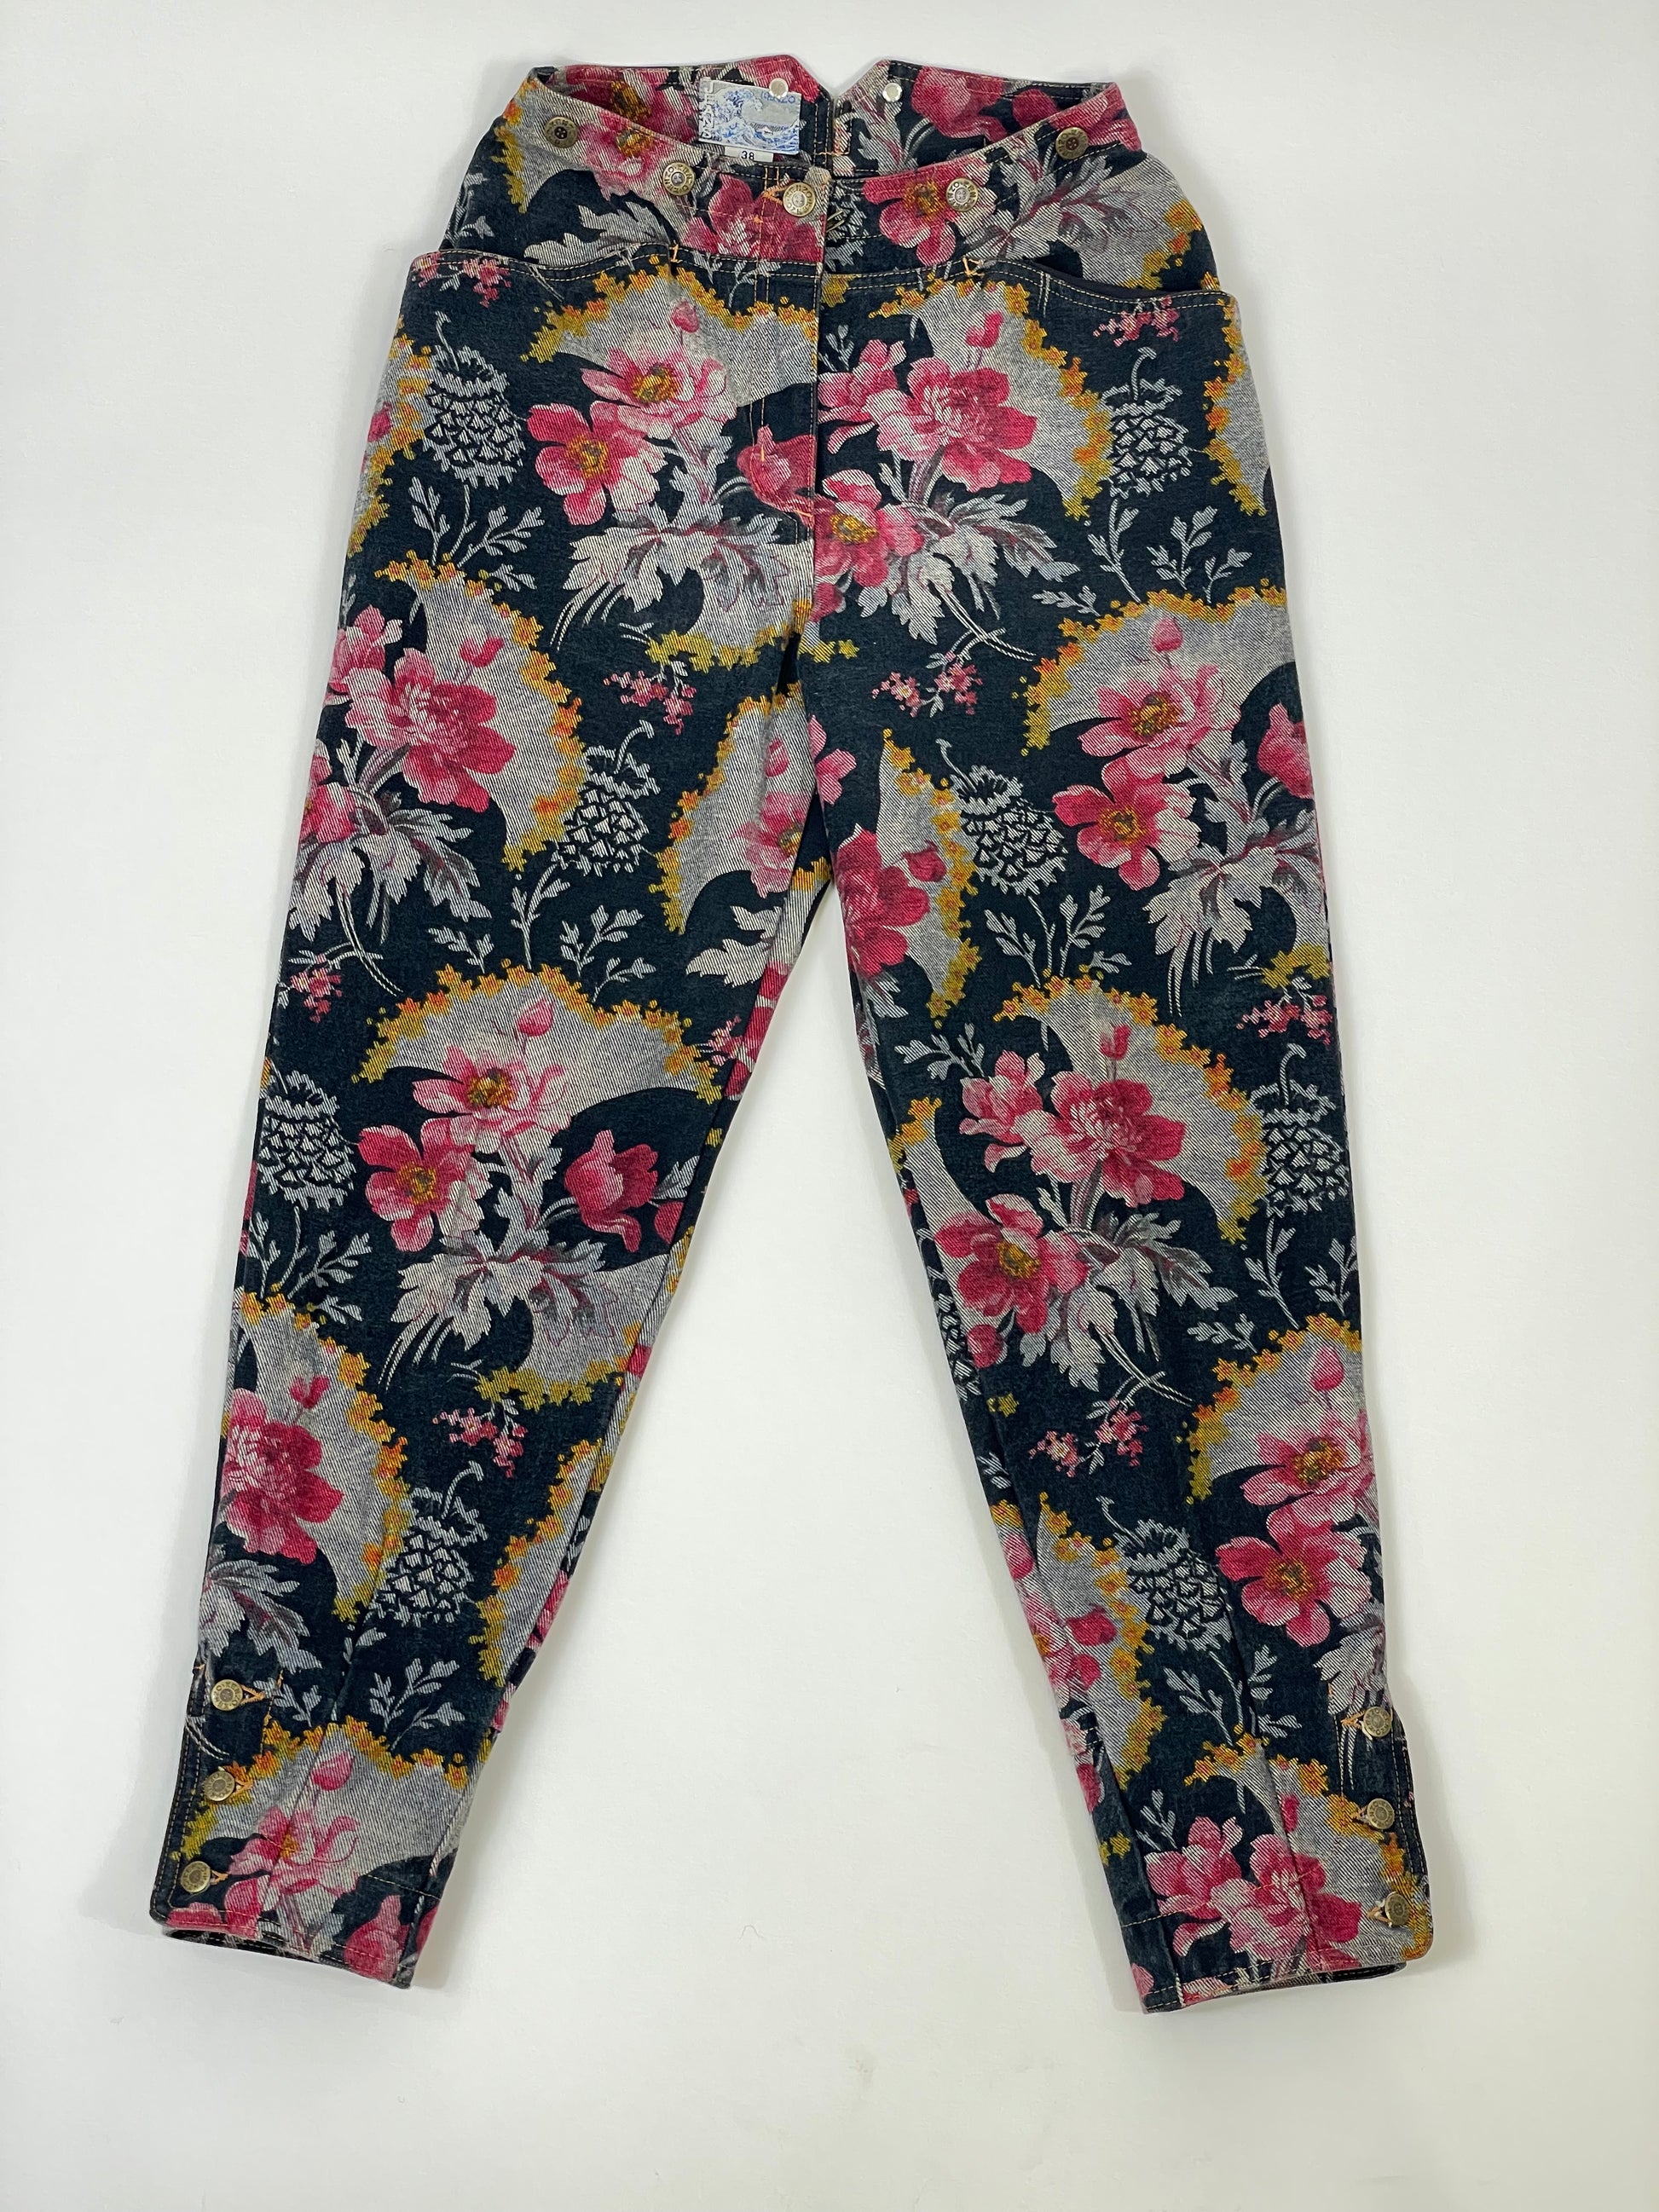 jeans-kenzo-1980s-tessuto-a-fiori